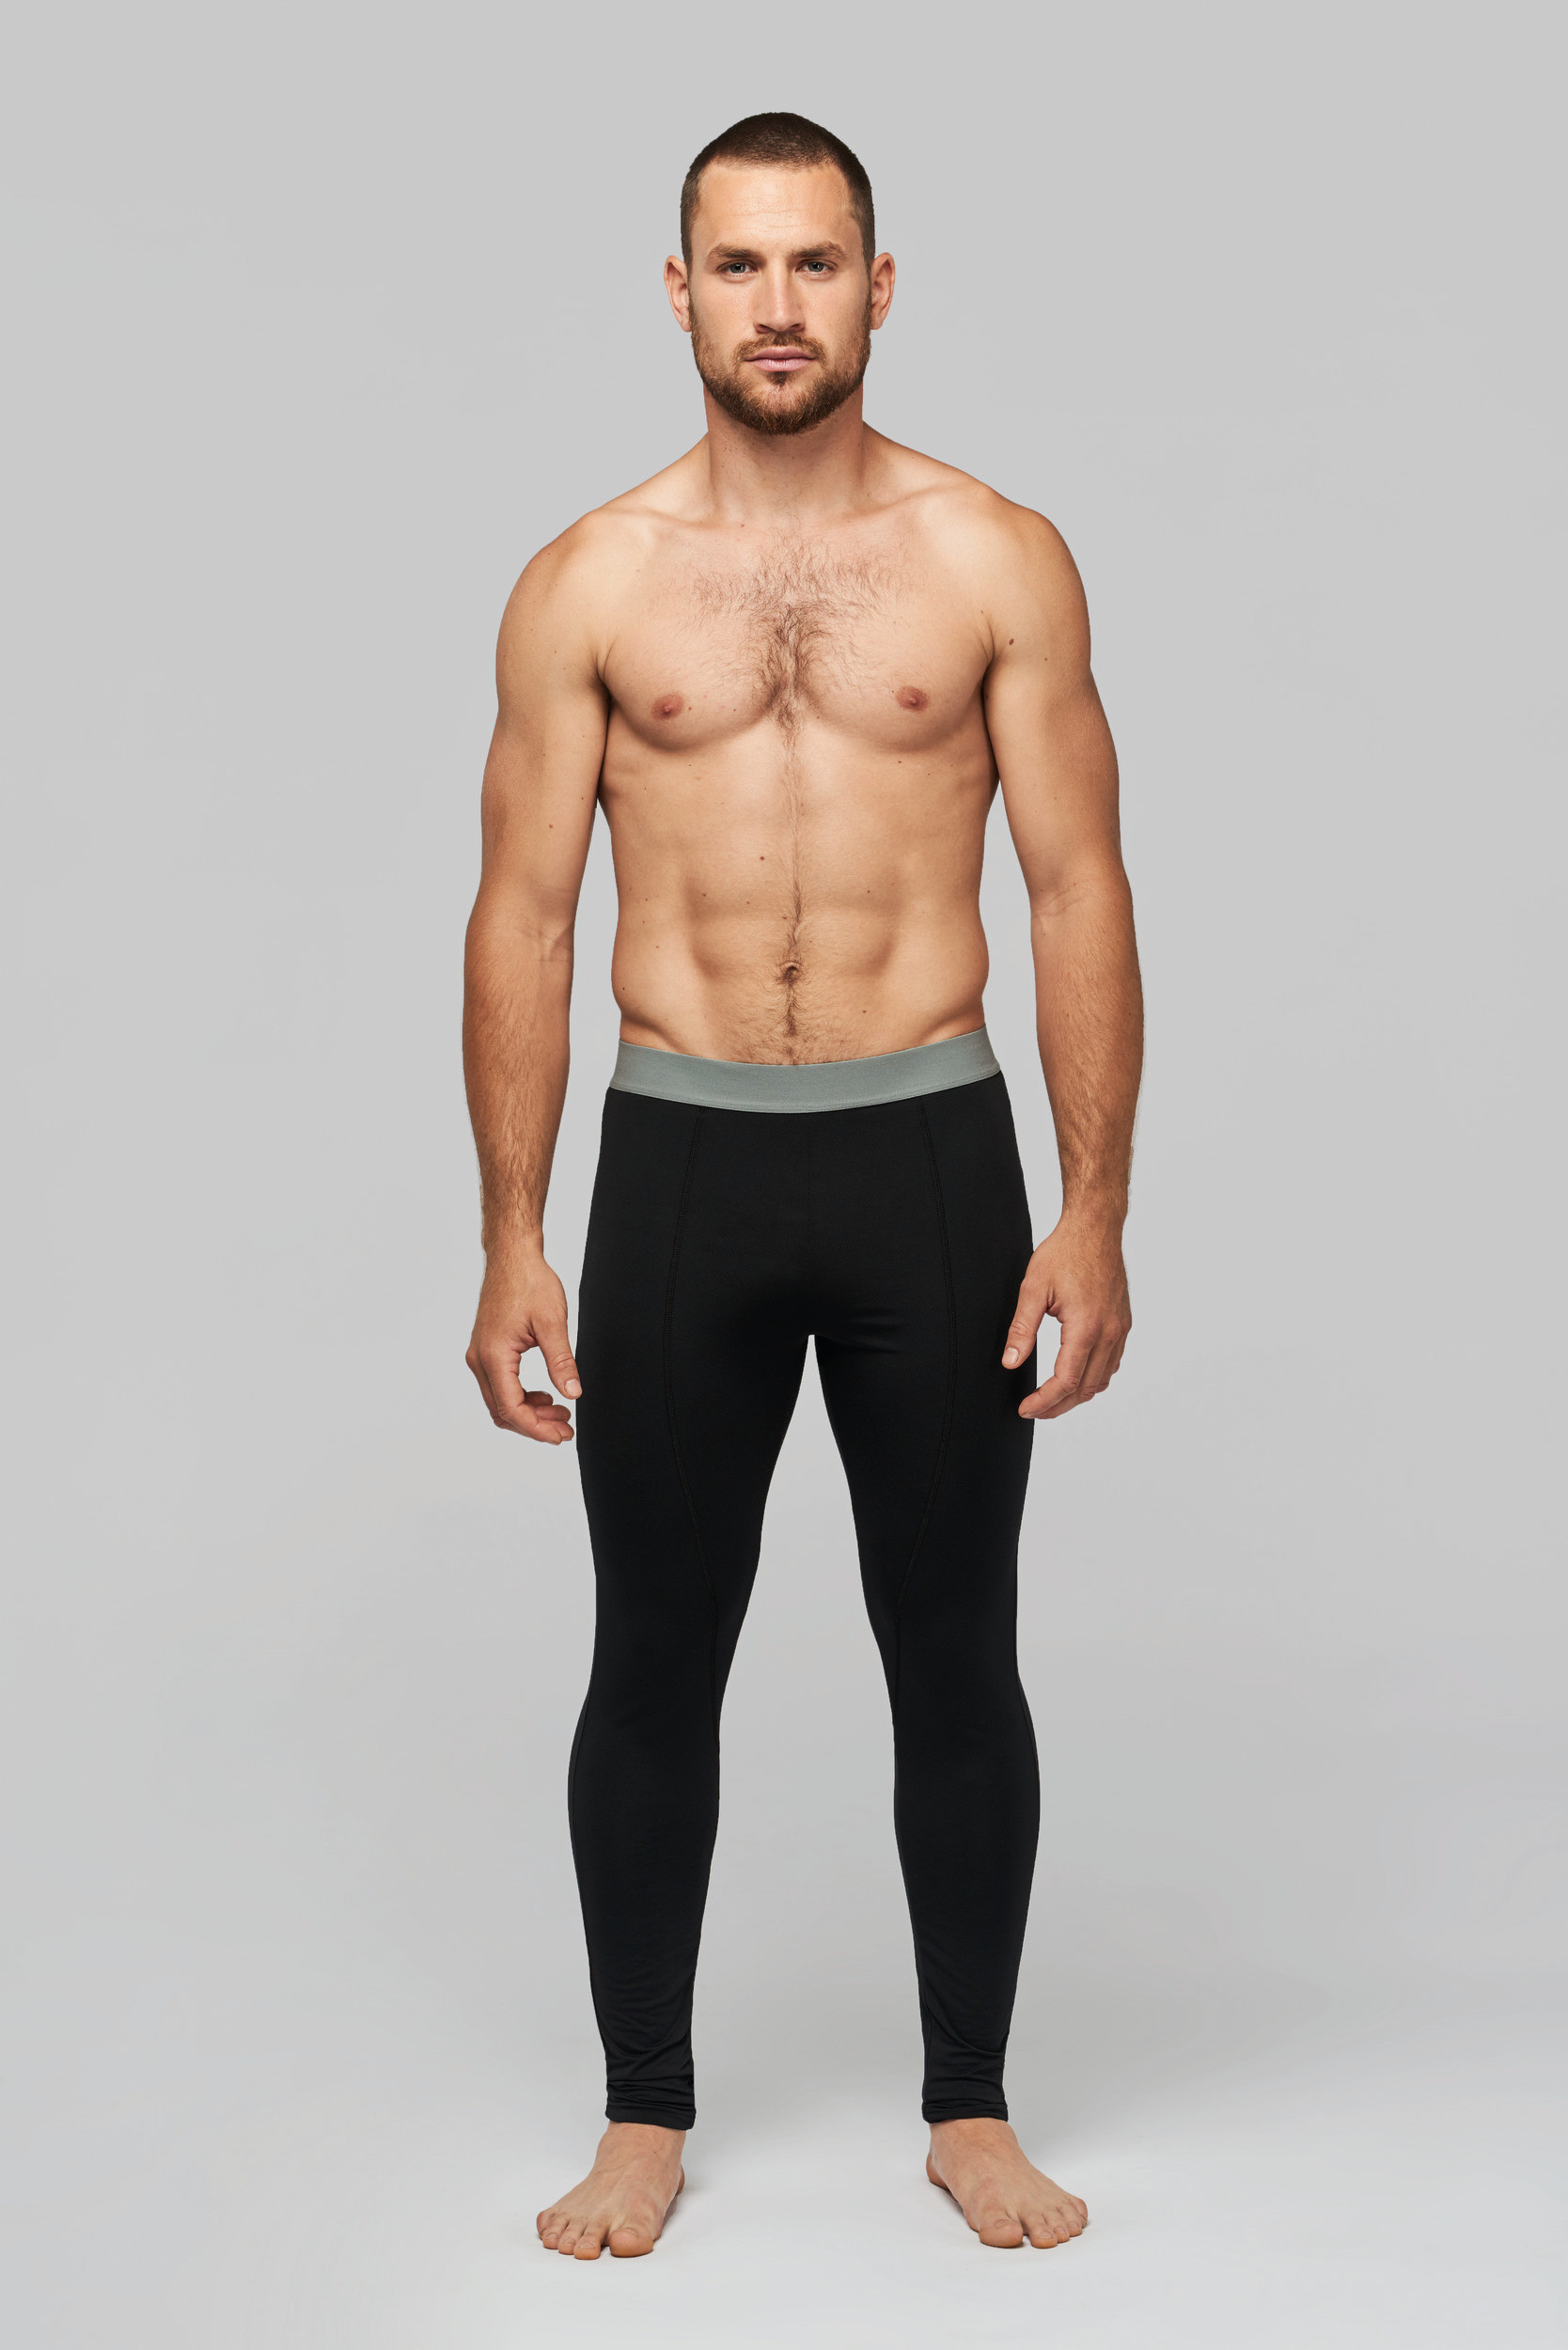 PA017 - Collant sous-vêtement sport homme personnalisé - PROACT®